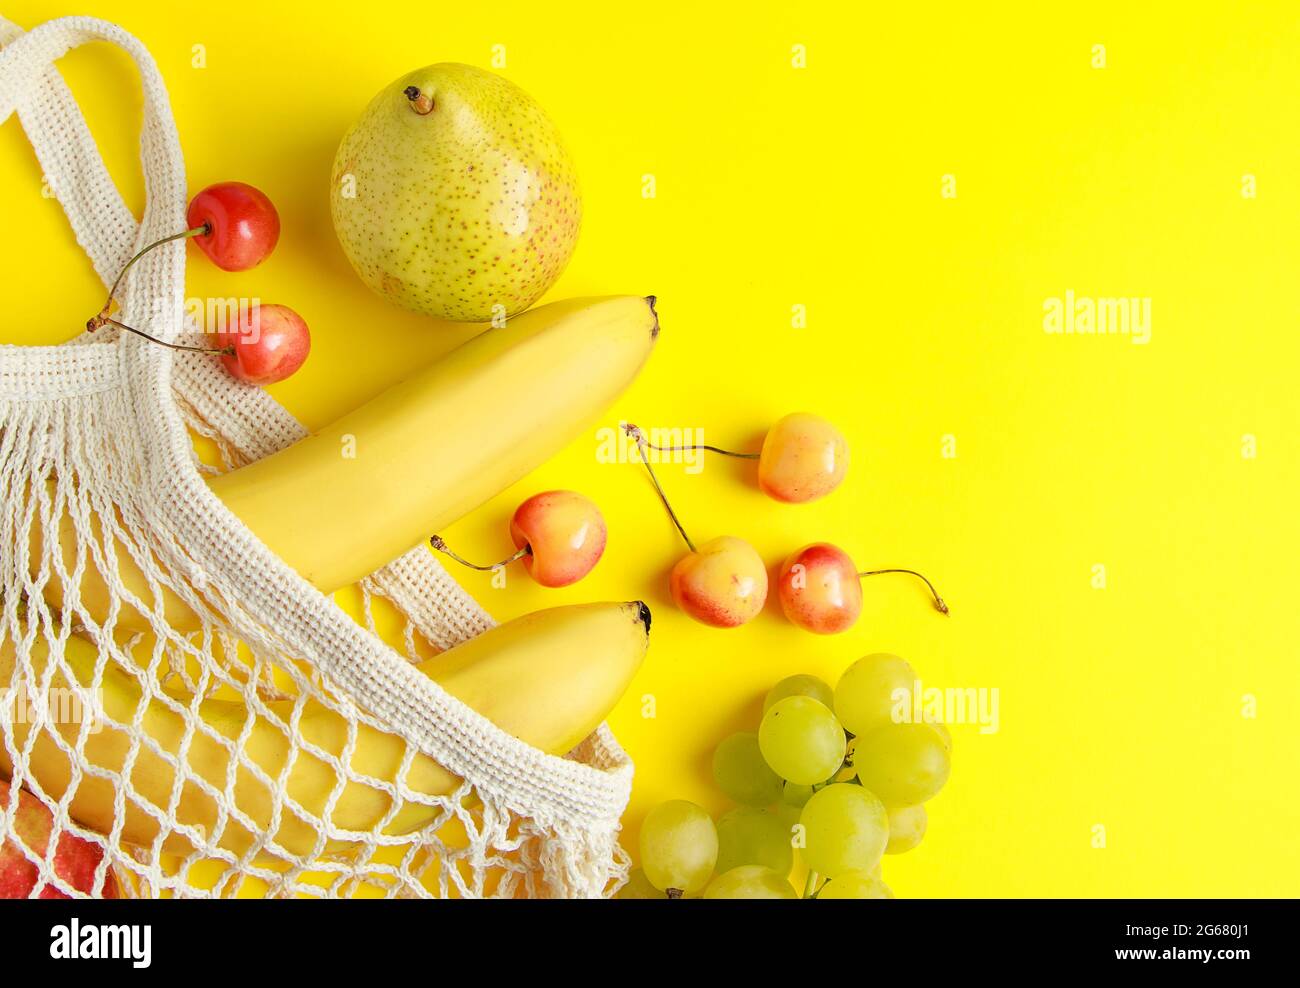 Umweltfreundliche Einkaufstasche aus Baumwolle. Reife Früchte in einem Netzbeutel auf gelbem Hintergrund. Vegane Bio-Lebensmittel. Nachhaltiger Lebensstil und Zero Waste Konzept. Stockfoto